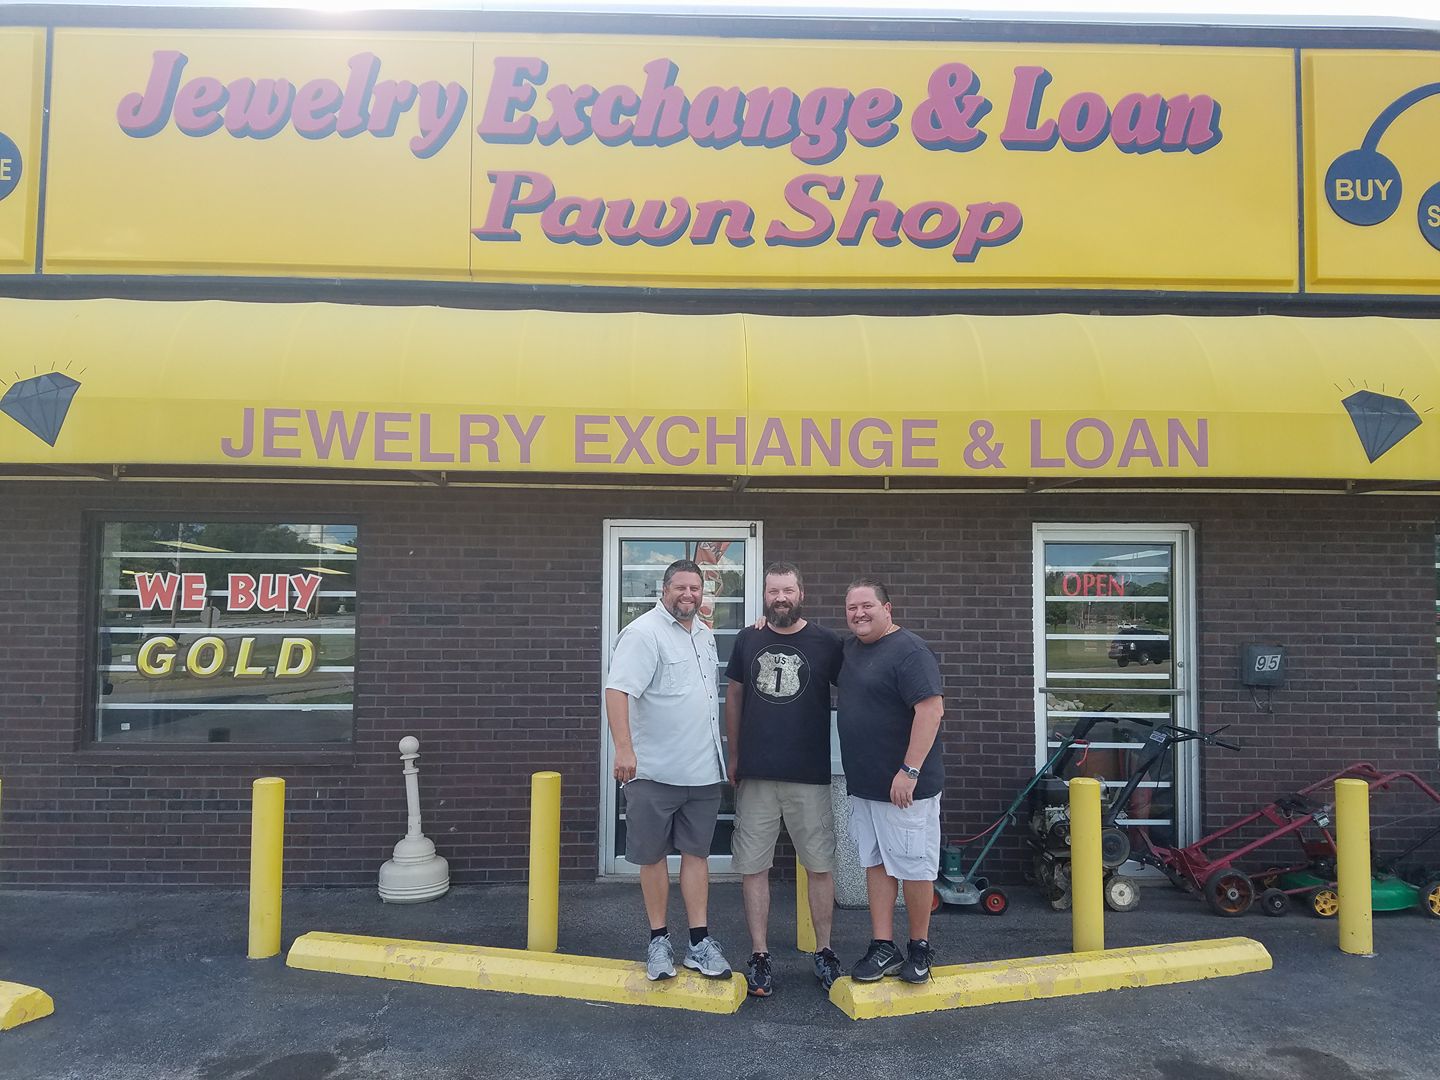 Jewelry Exchange & Loan